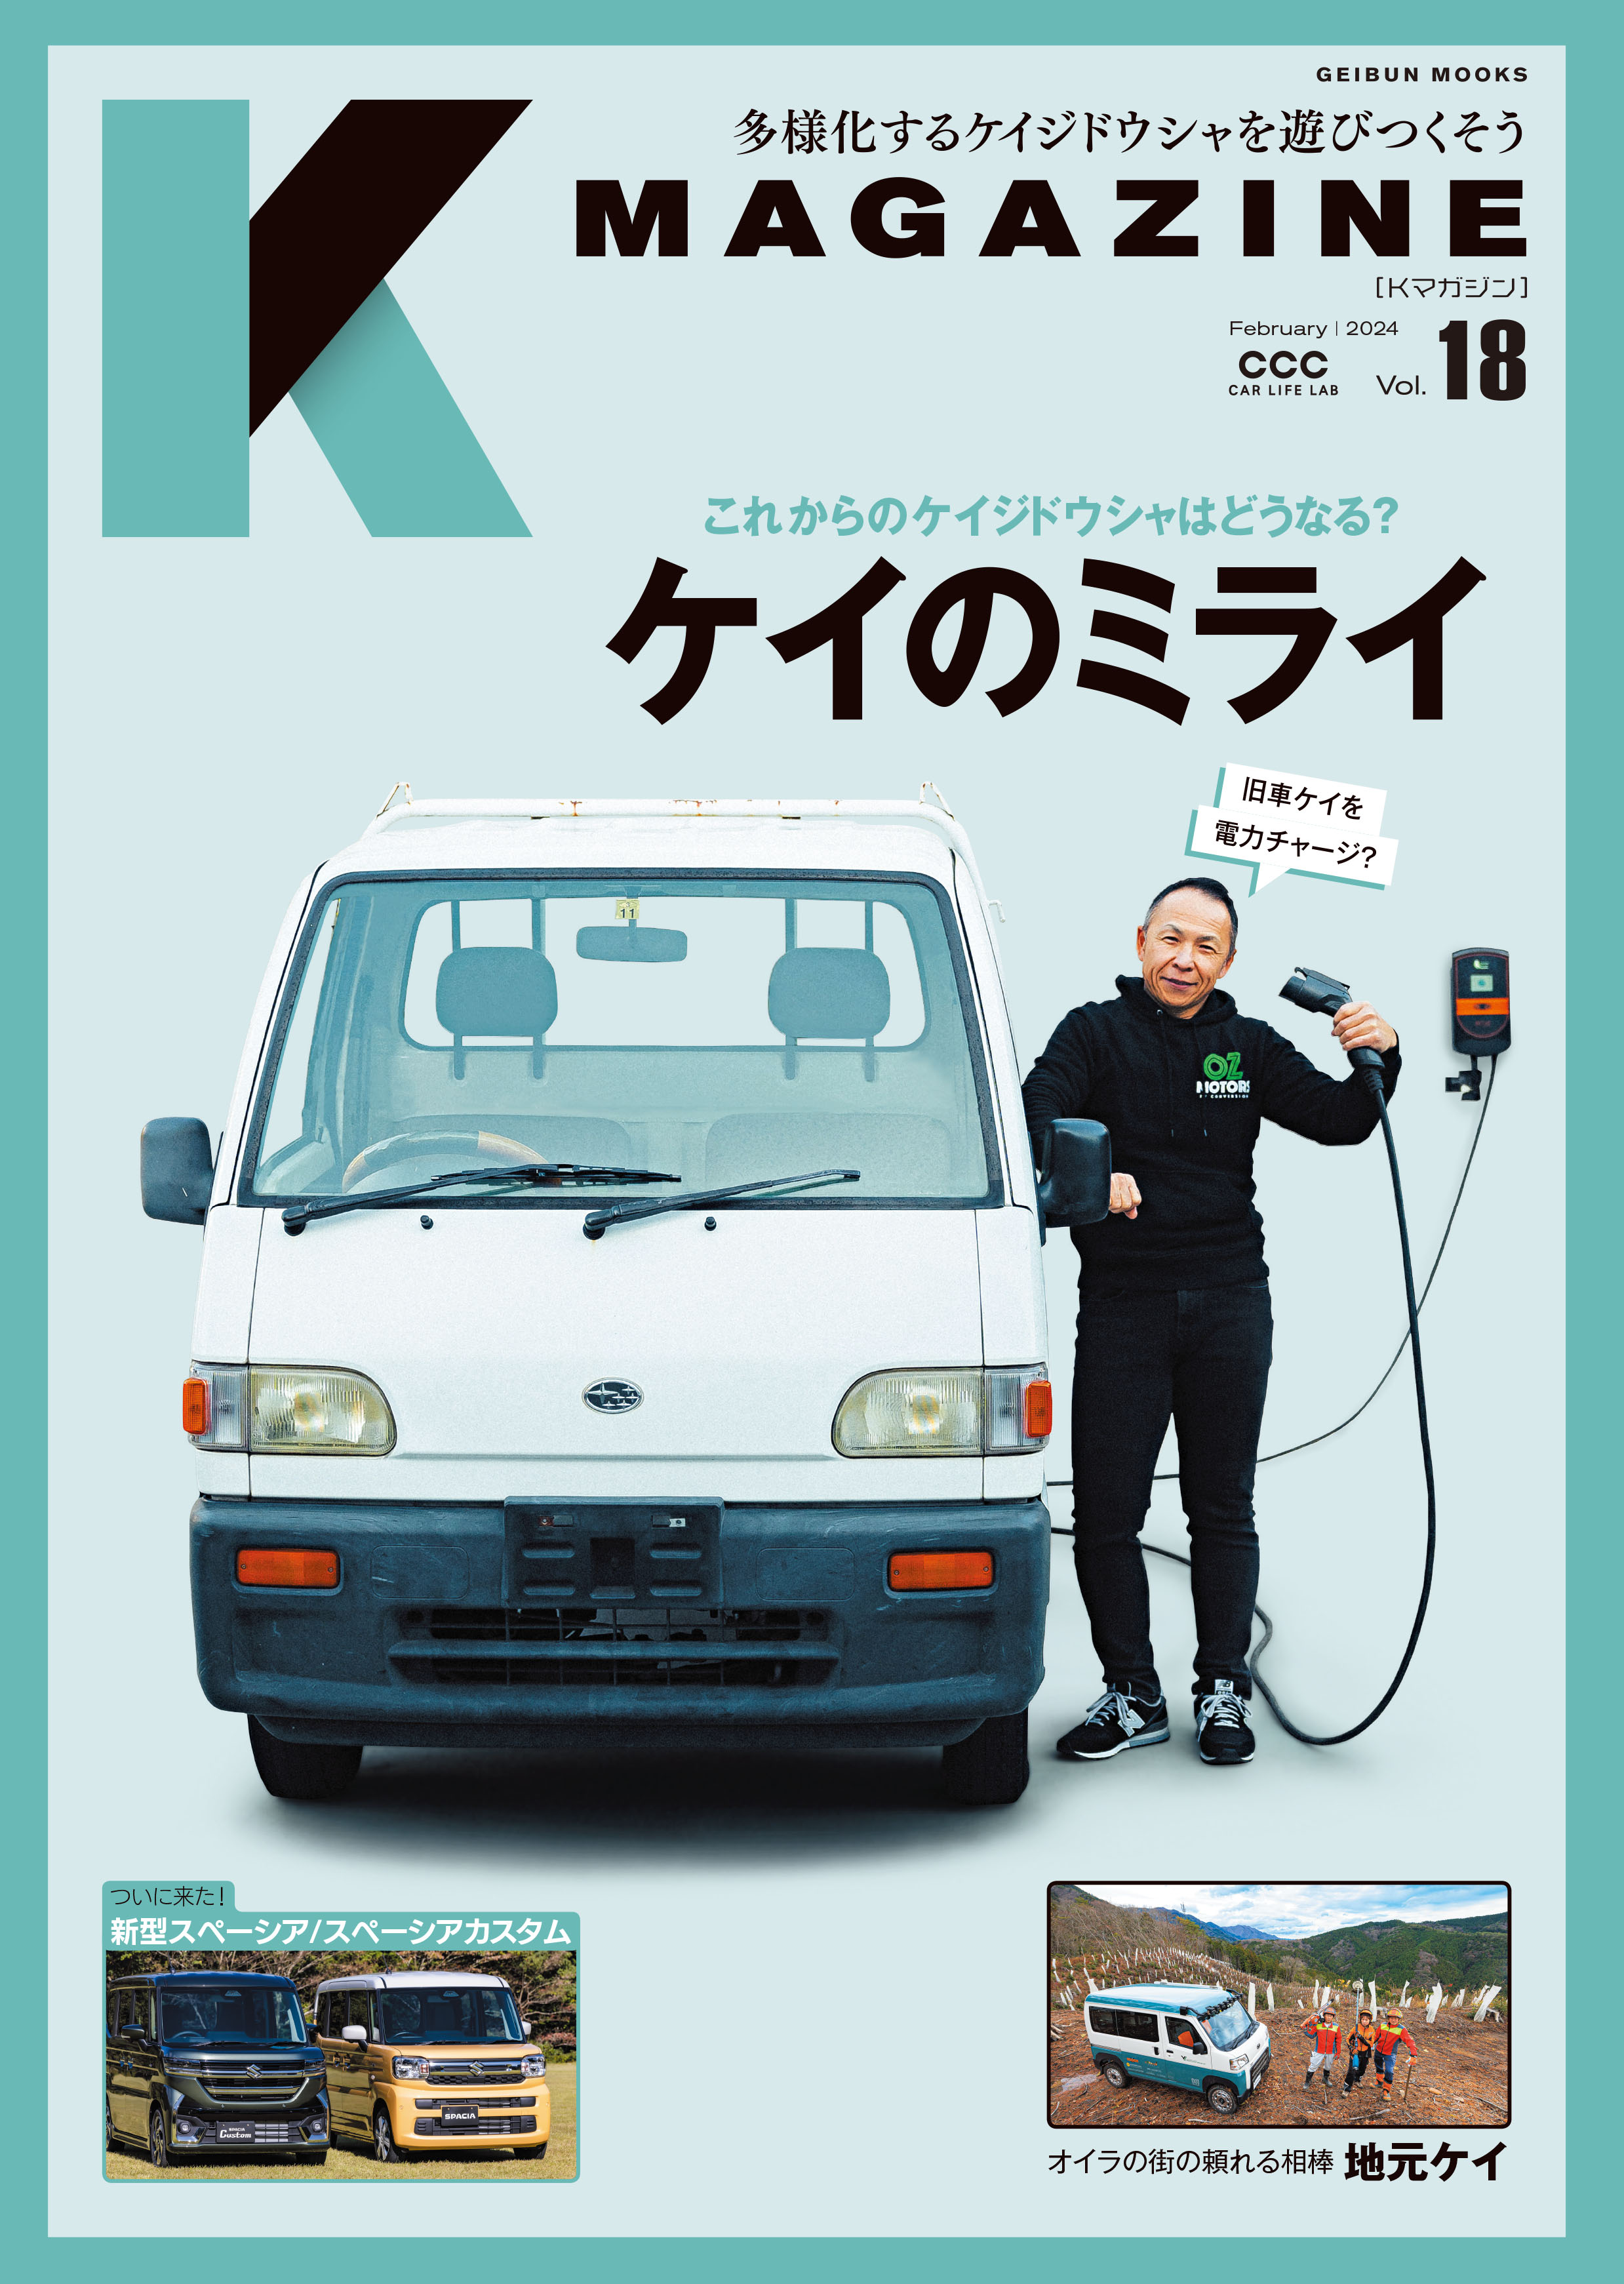 Kmagazine vol.18 - Kmagazine編集部 - 雑誌・無料試し読みなら、電子書籍・コミックストア ブックライブ